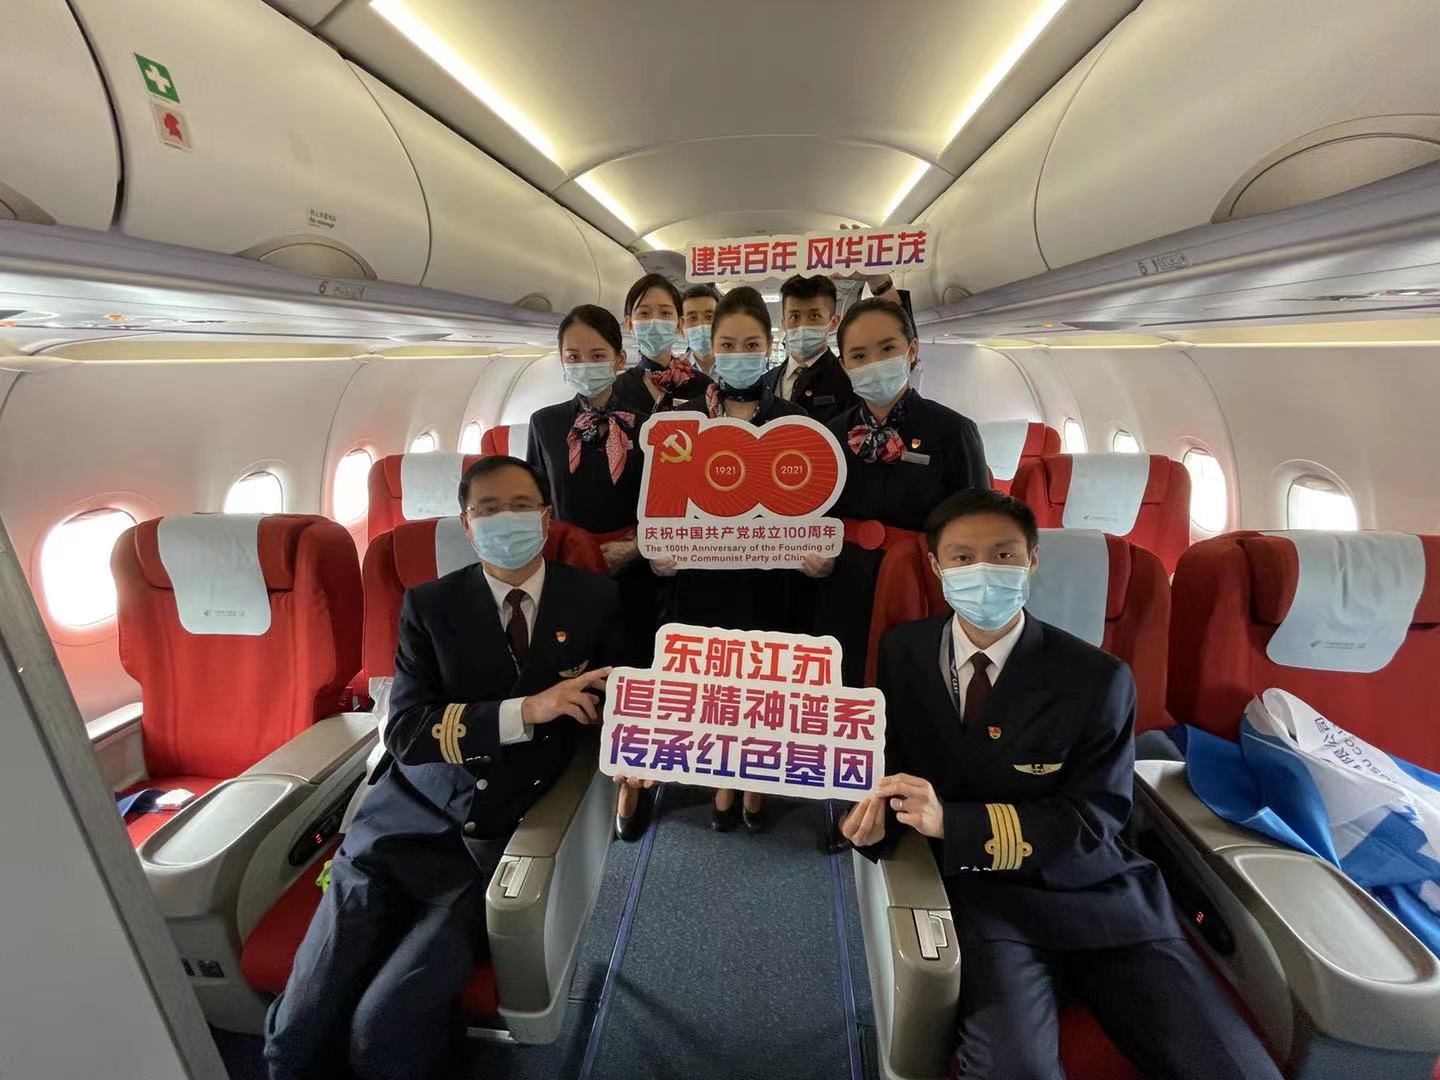 首航航班乘务员欢迎旅客登机_天津航空_高清大图_图片下载_美通社 PR-Newswire